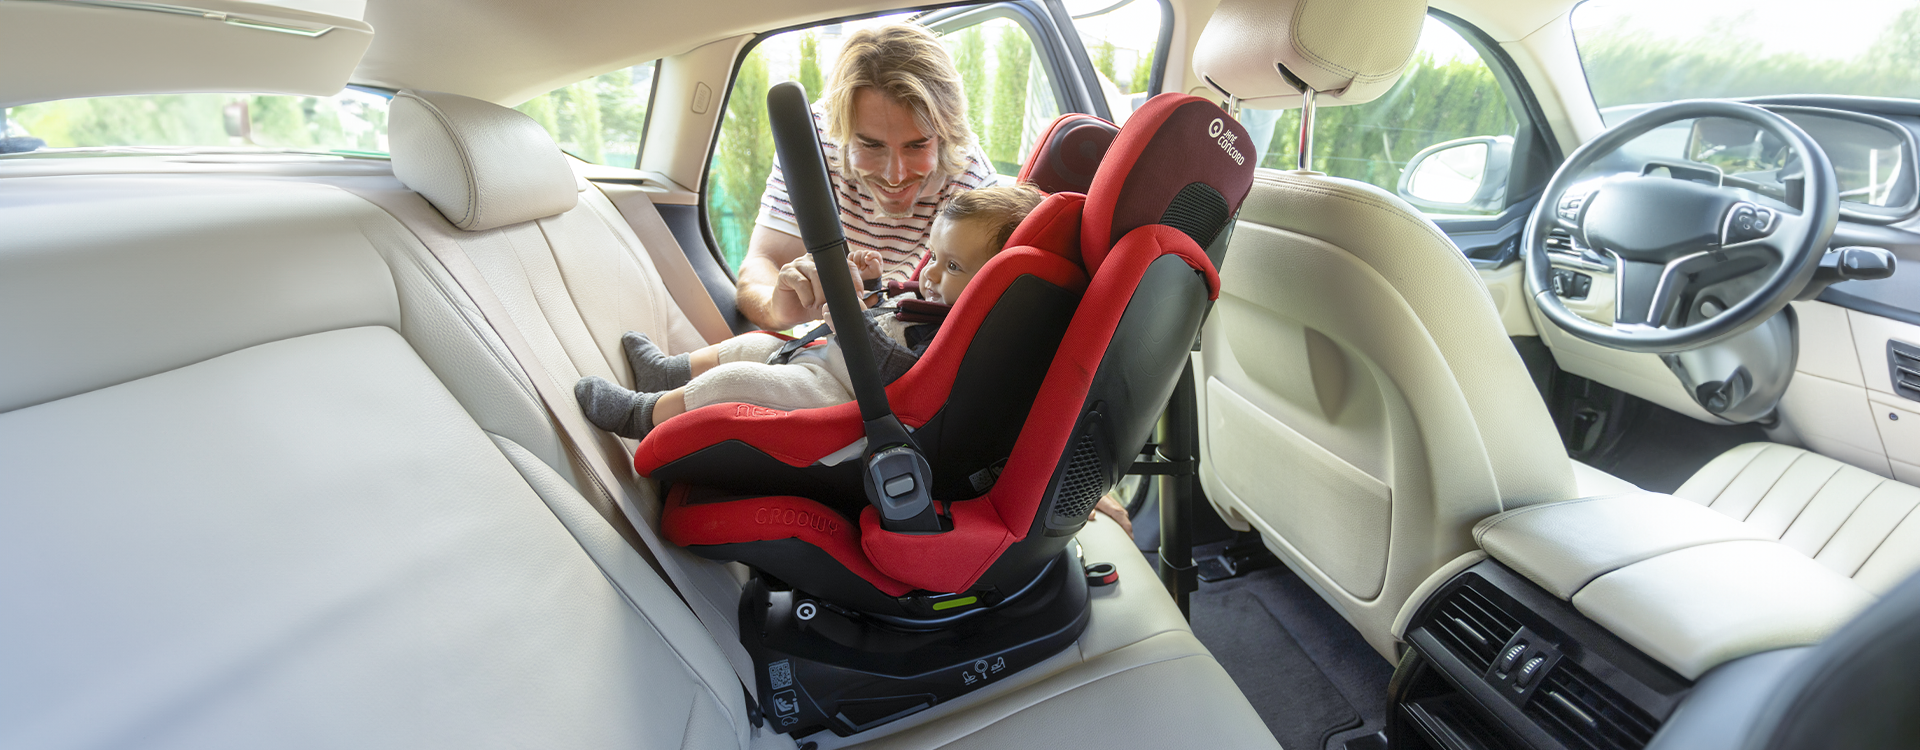 Viaje en coche con Bebé: Consejos para un viaje seguro y relajado